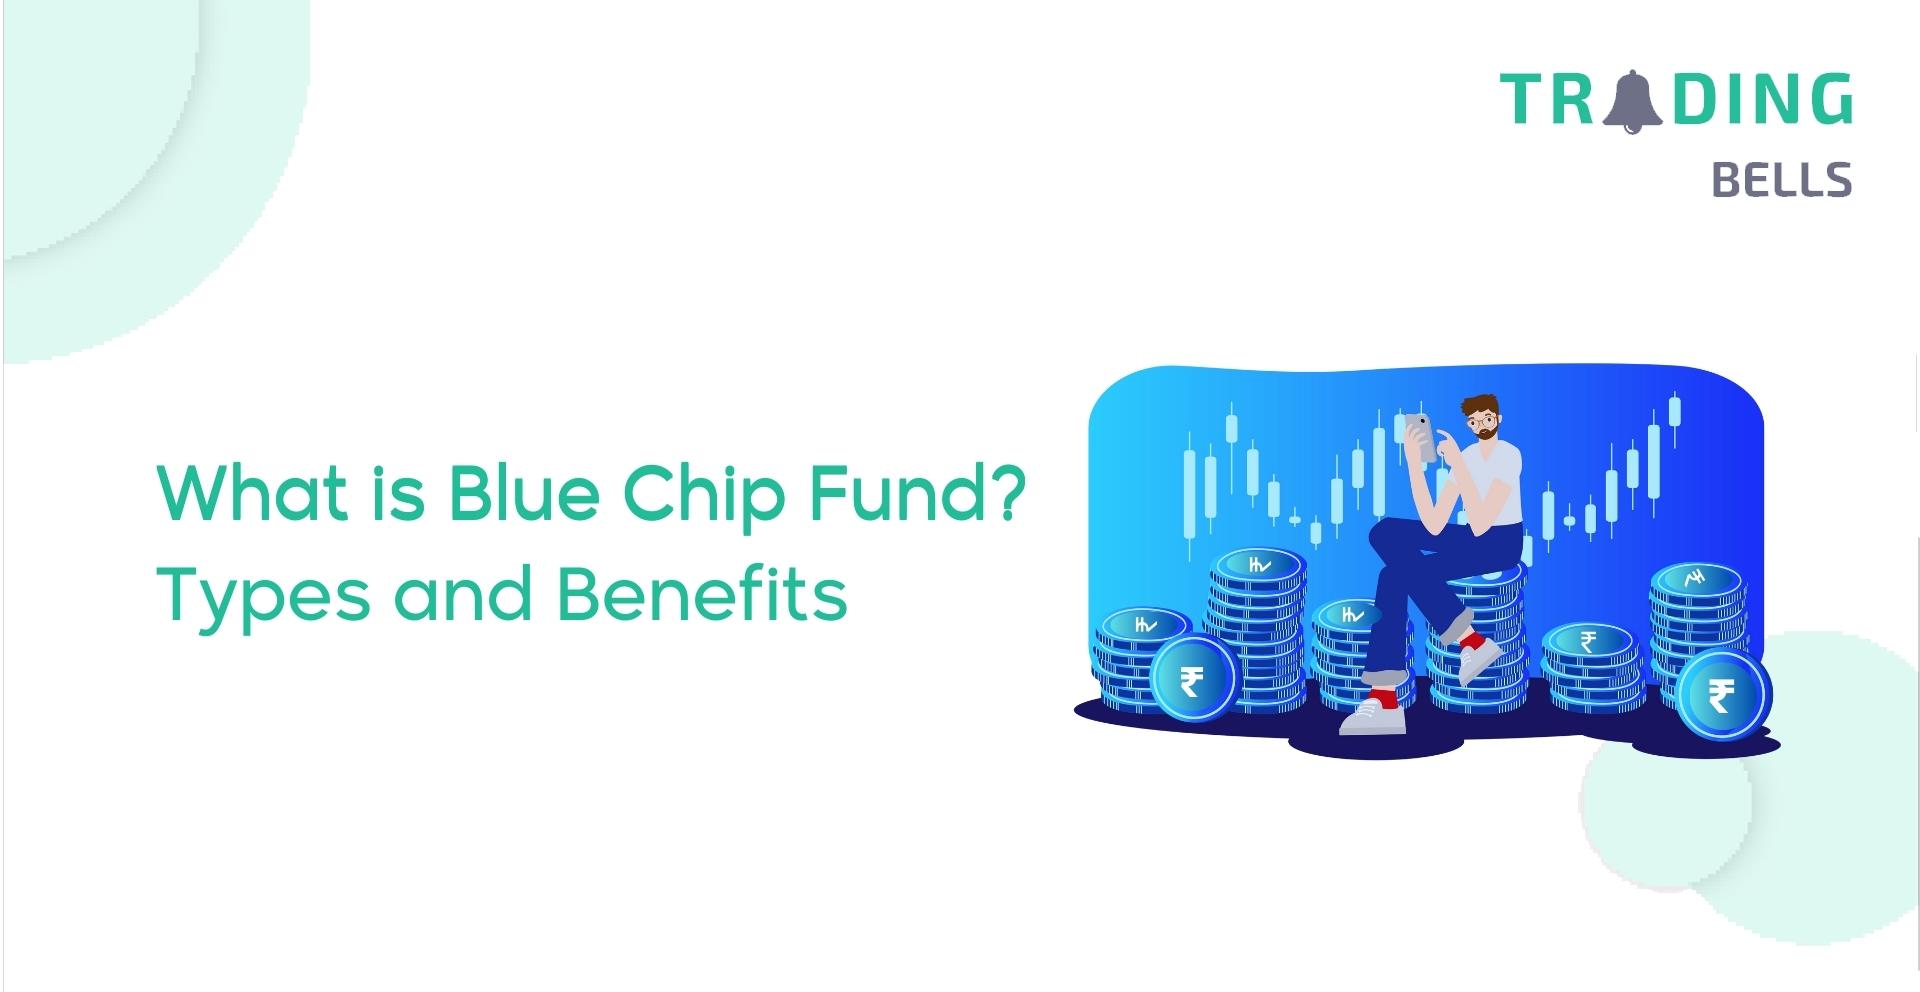 Blue Chip Fund